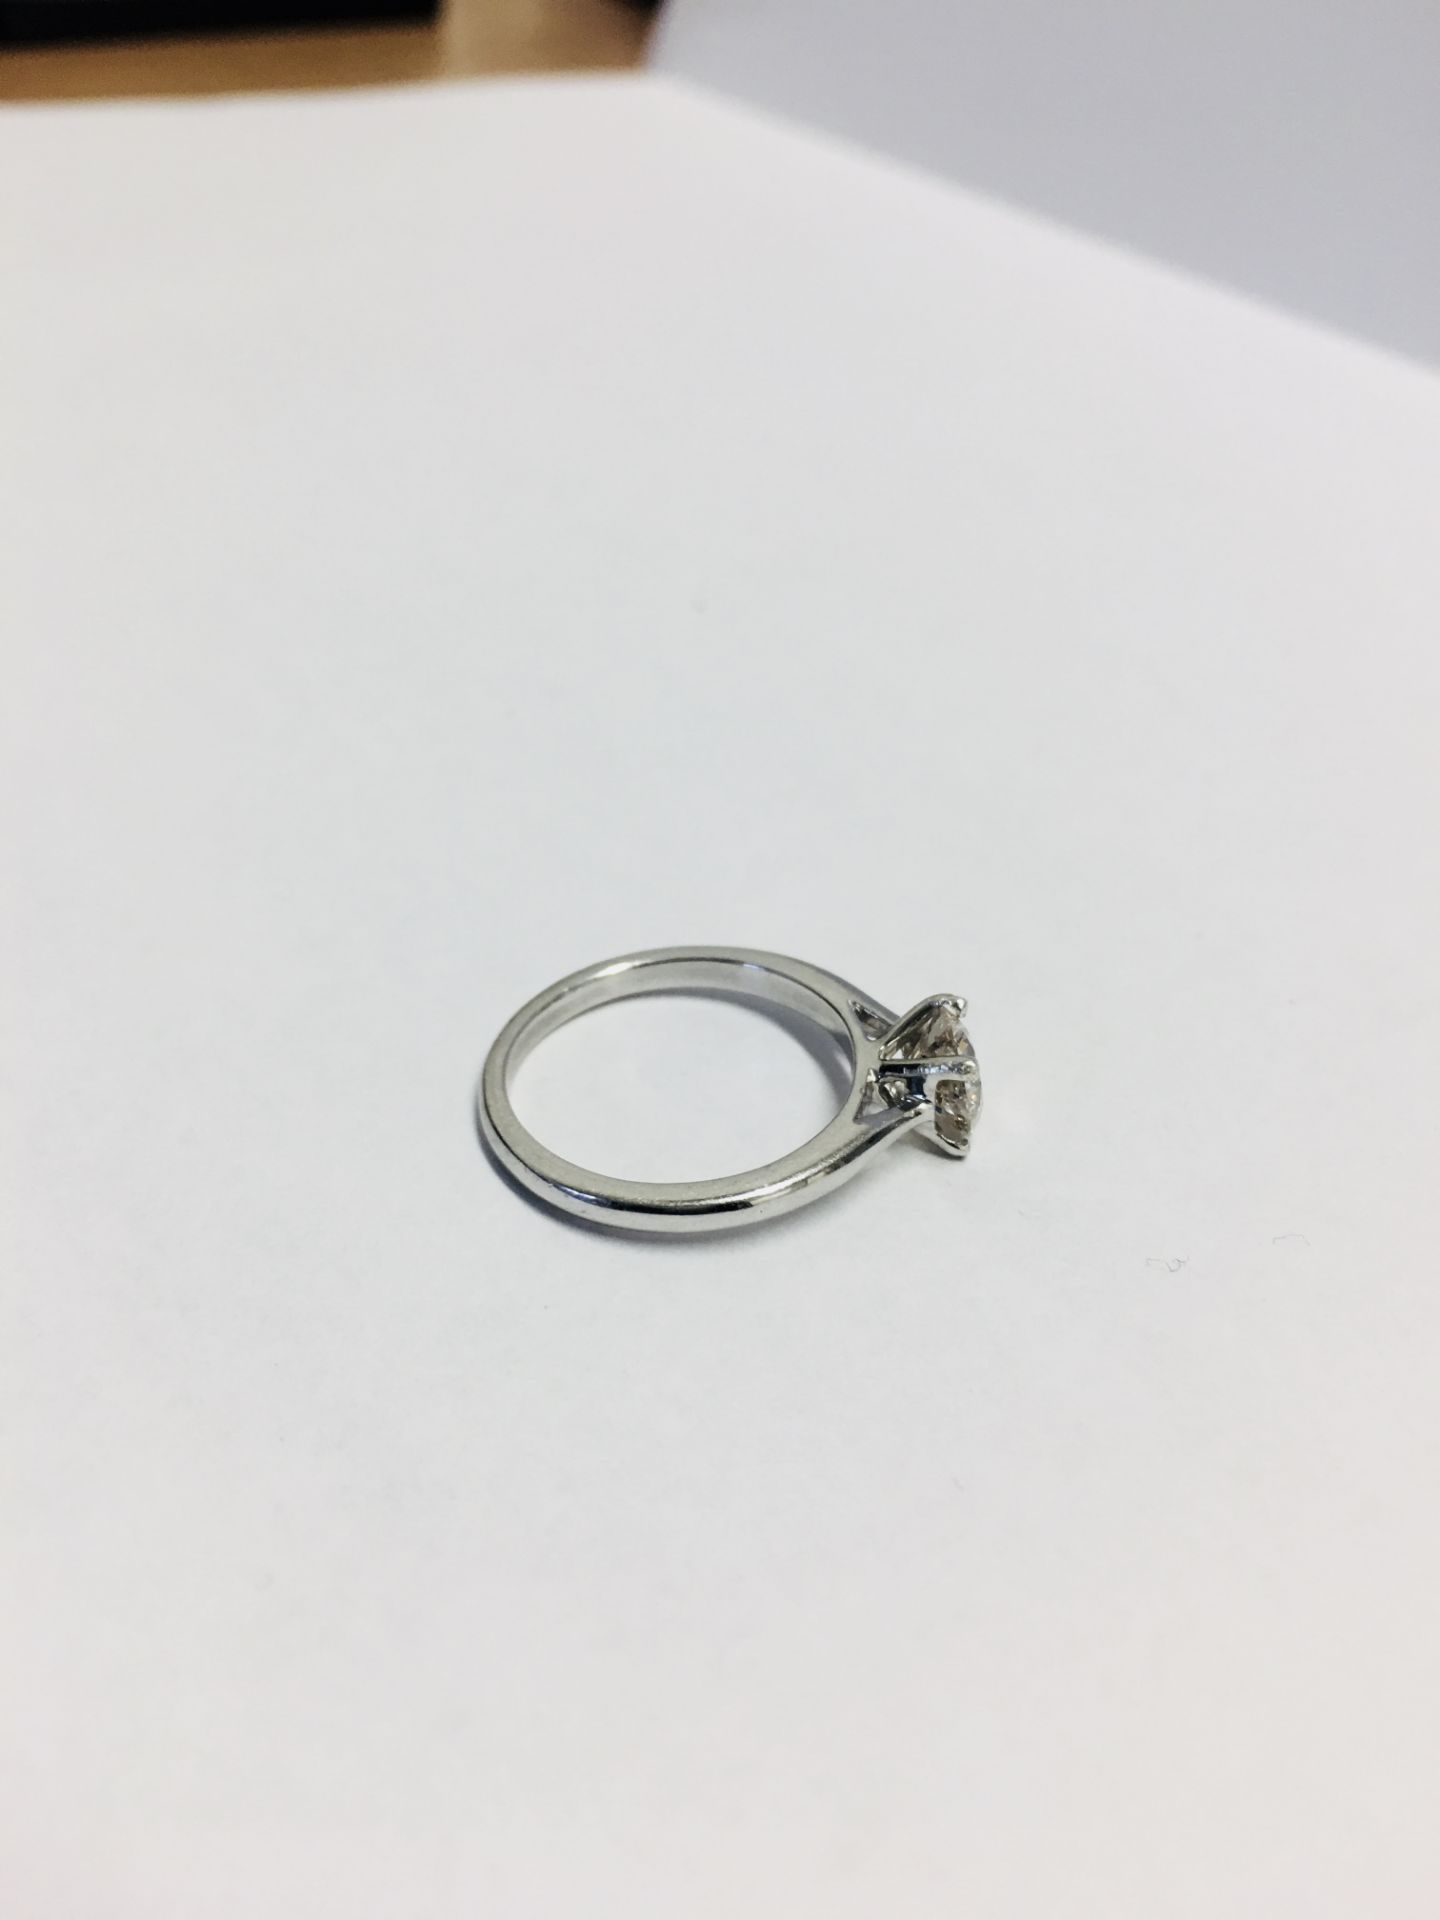 1.13Ct Diamond Solitaire Ring Set In Platinum. - Image 4 of 4